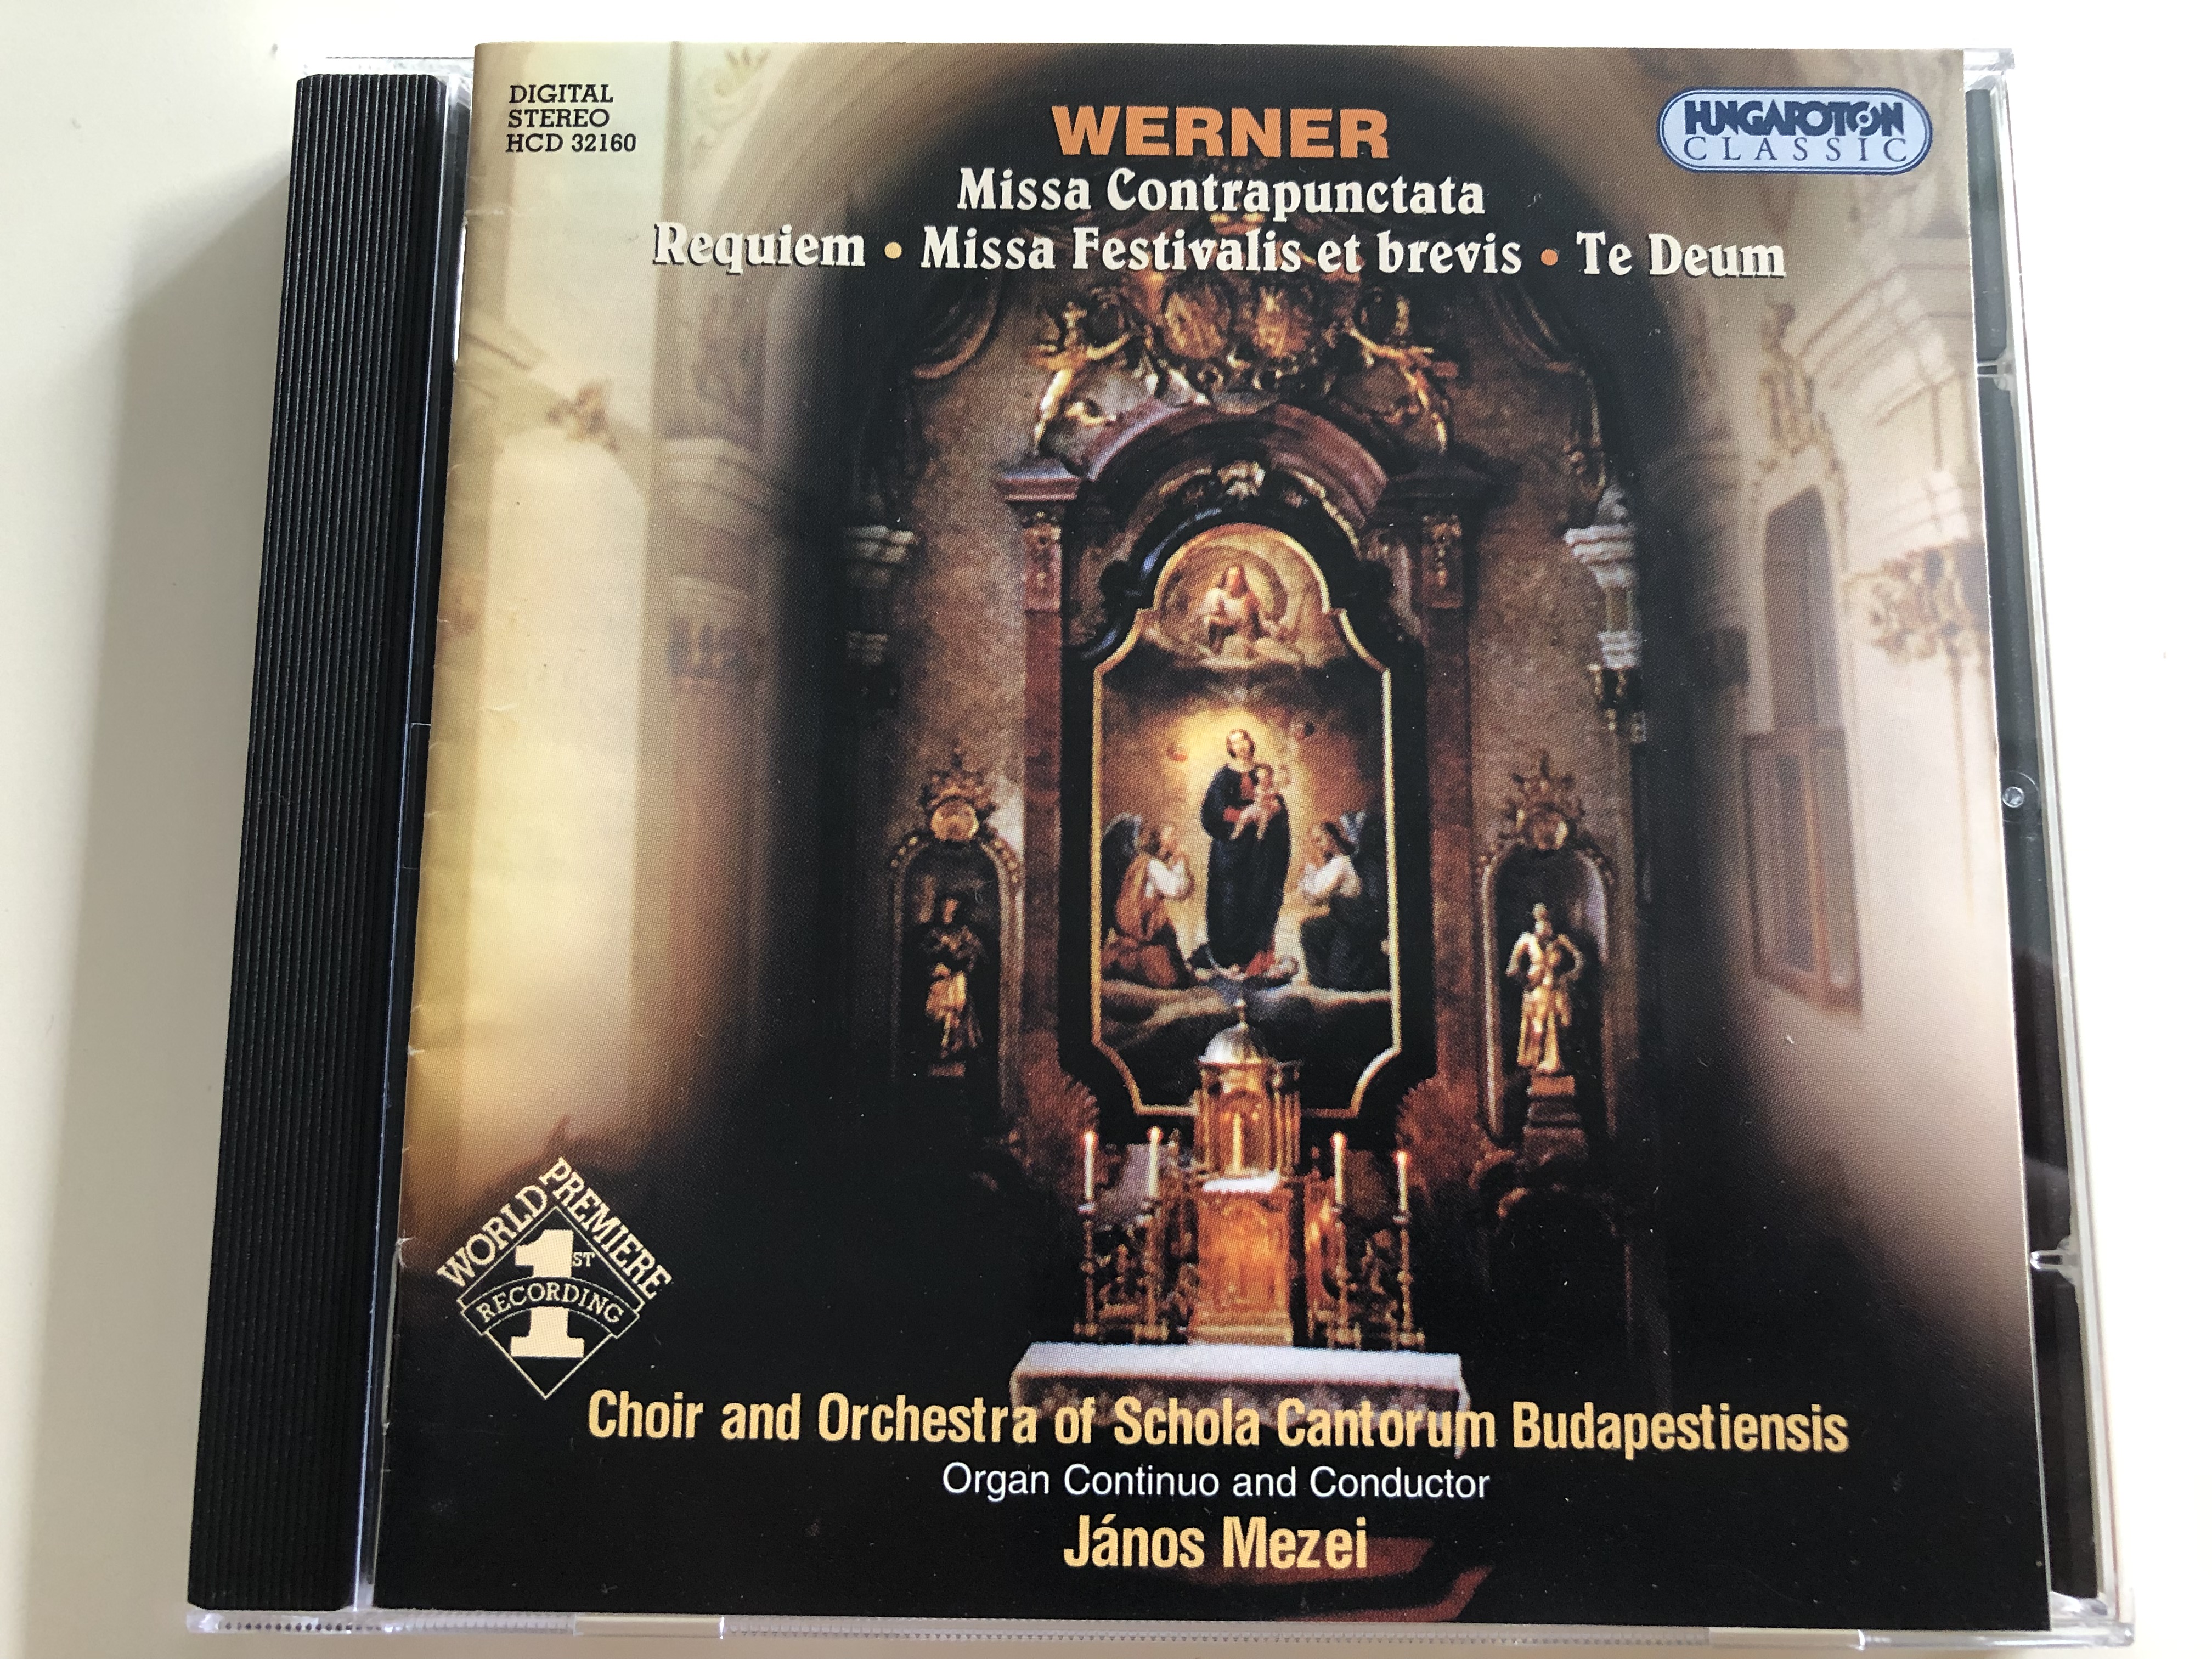 werner-missa-contrapunctata-requiem-missa-festivalis-et-brevis-te-deum-choir-and-orchestra-of-schola-cantorum-budapestiensis-organ-continuo-and-conductor-j-nos-mezei-hungaroton-classic-audio-cd-2004-hcd-32160-1-.jpg